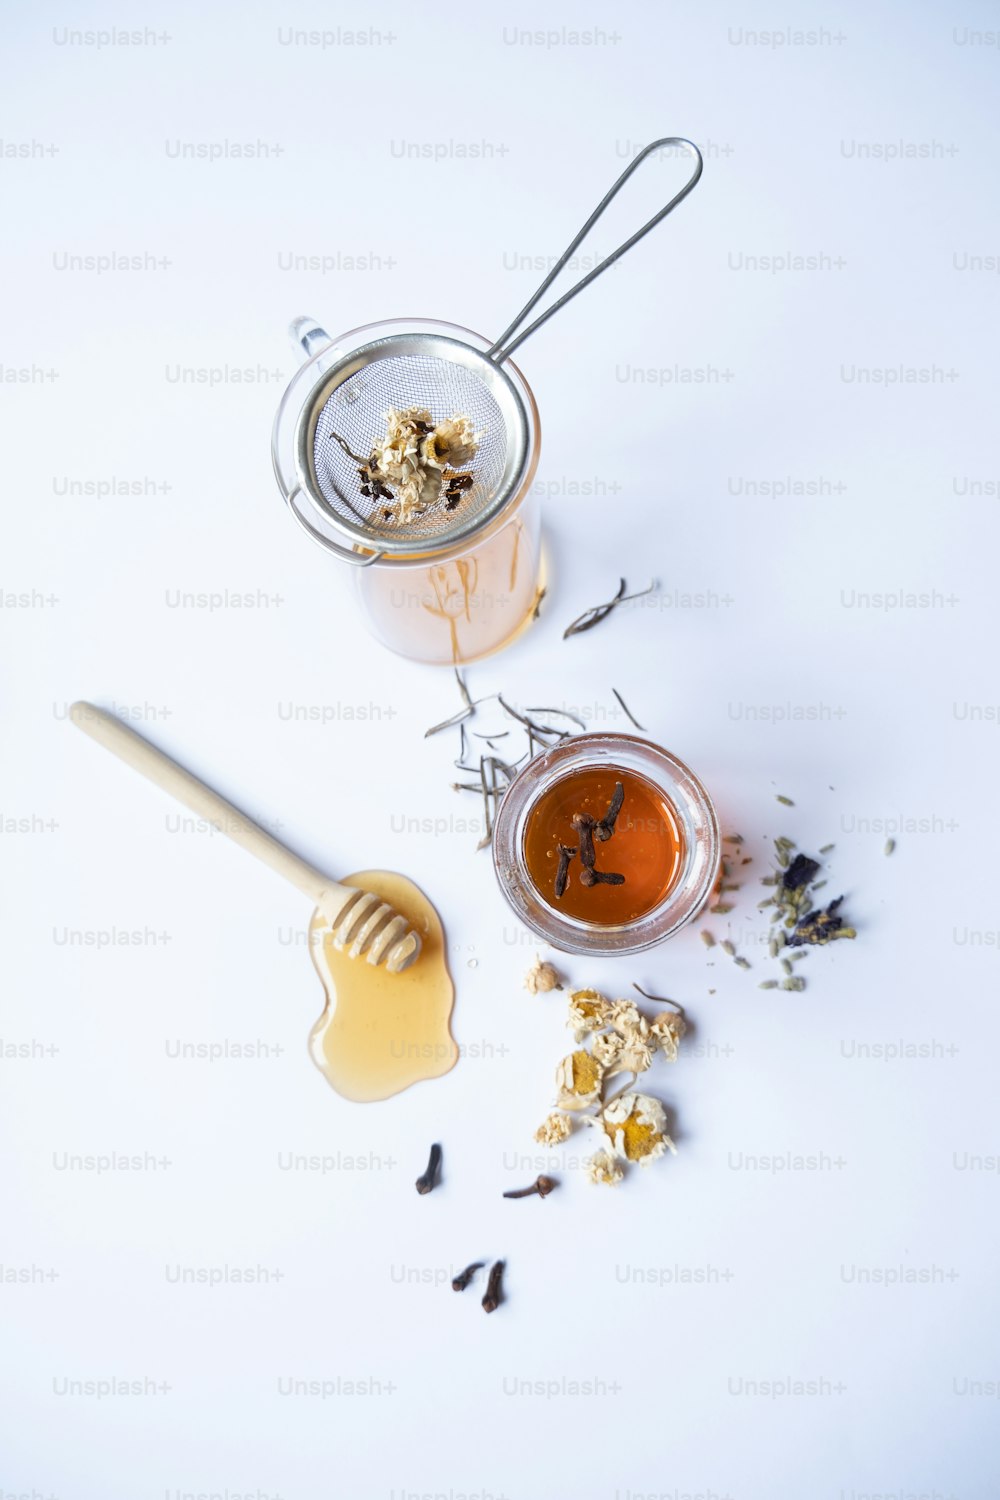 un pot de miel et une cuillère de miel sur une surface blanche